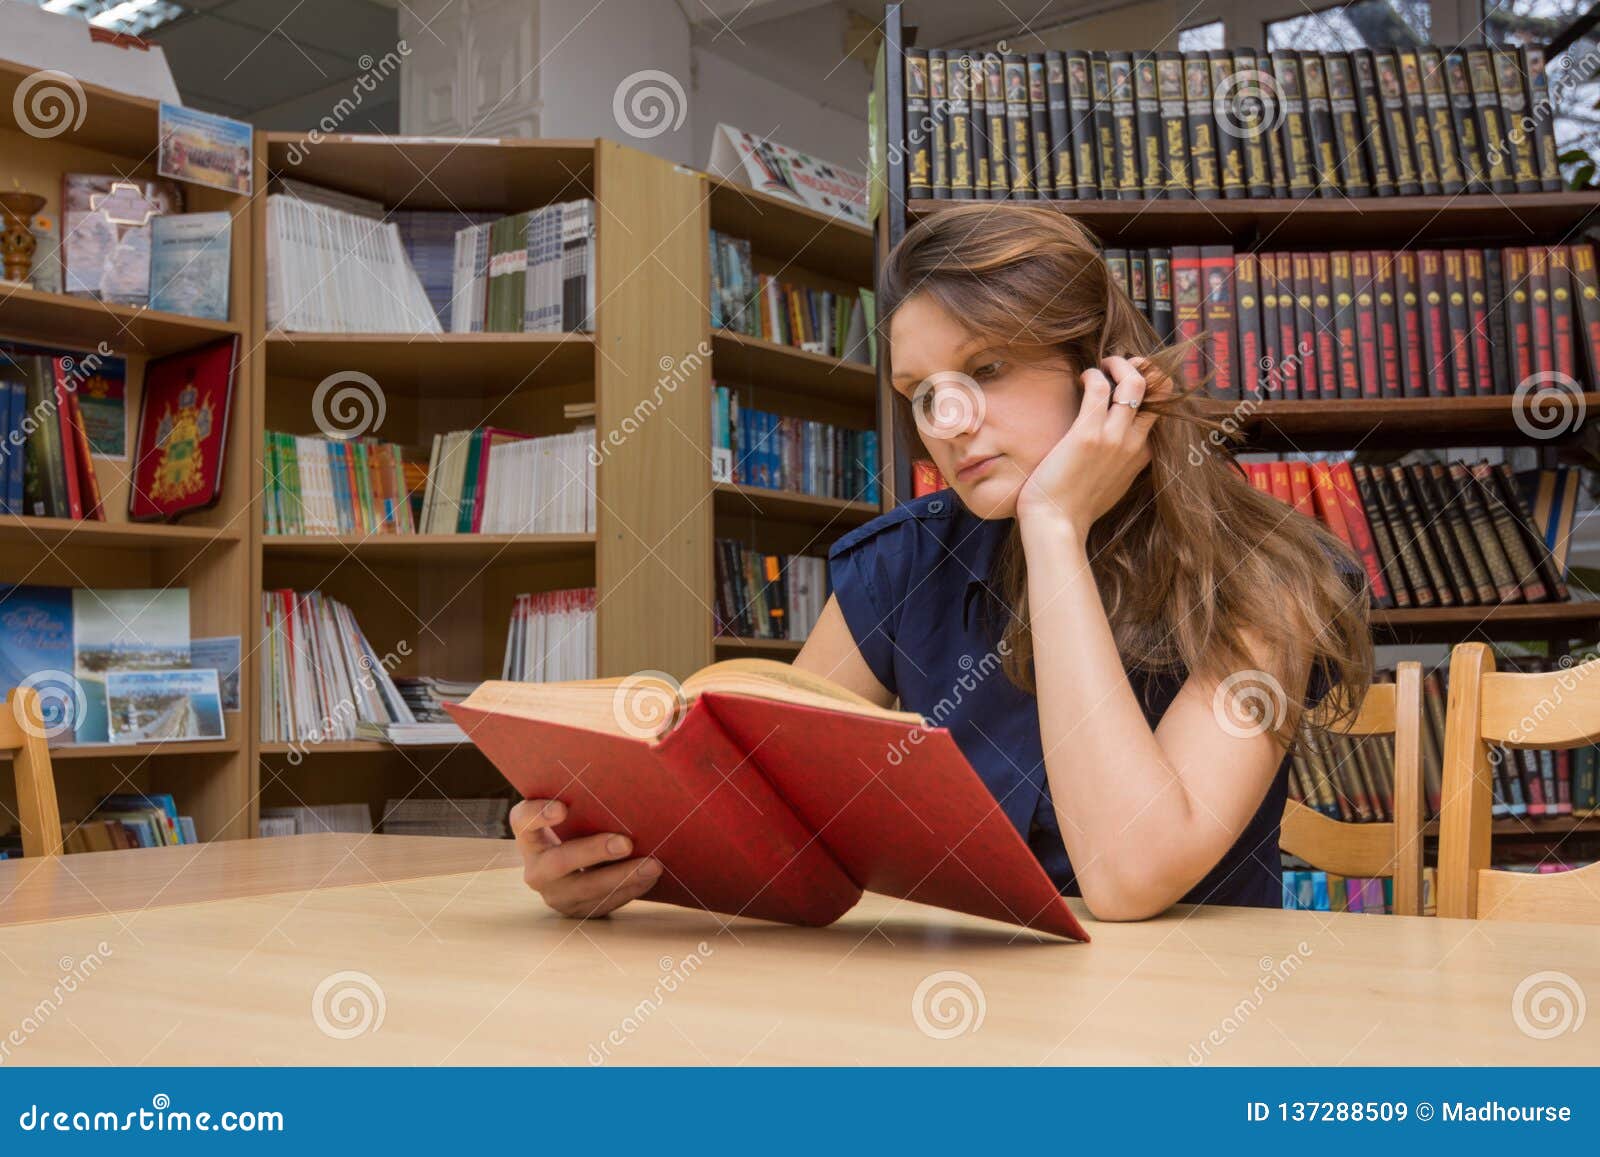 Она сидит в библиотеке. Девушка в читальном зале. Люди в читальном зале. Посетители библиотеки. Люди читают в читальном зале.